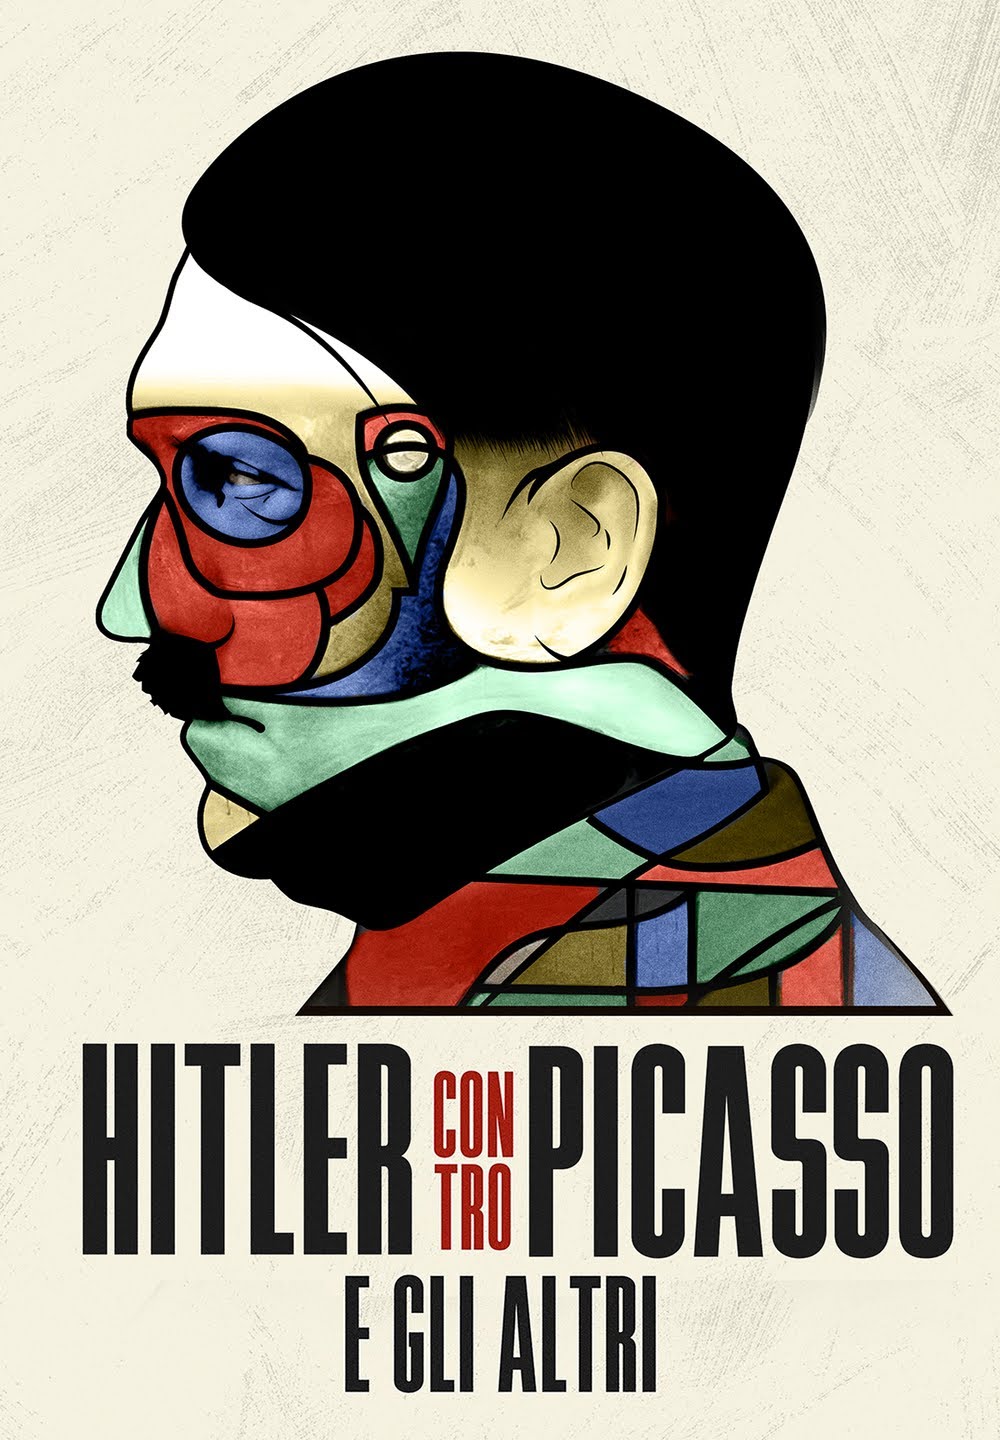 Hitler contro Picasso e gli altri [HD] (2018)